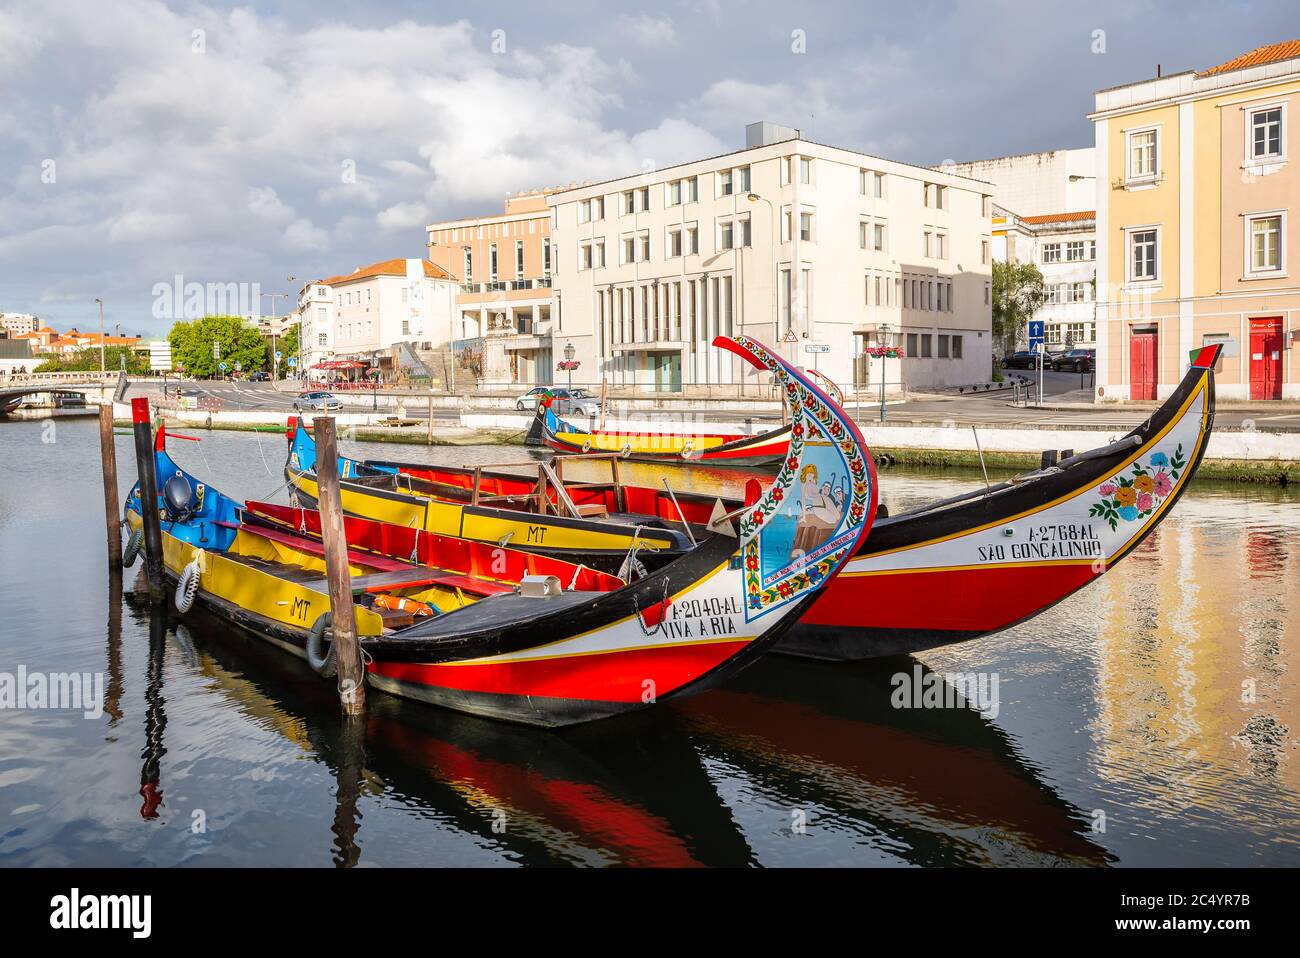 Les promenades en bateau Moliceiro colorées à Aveiro sont populaires auprès des touristes pour profiter de la vue sur les canaux charmants. Banque D'Images